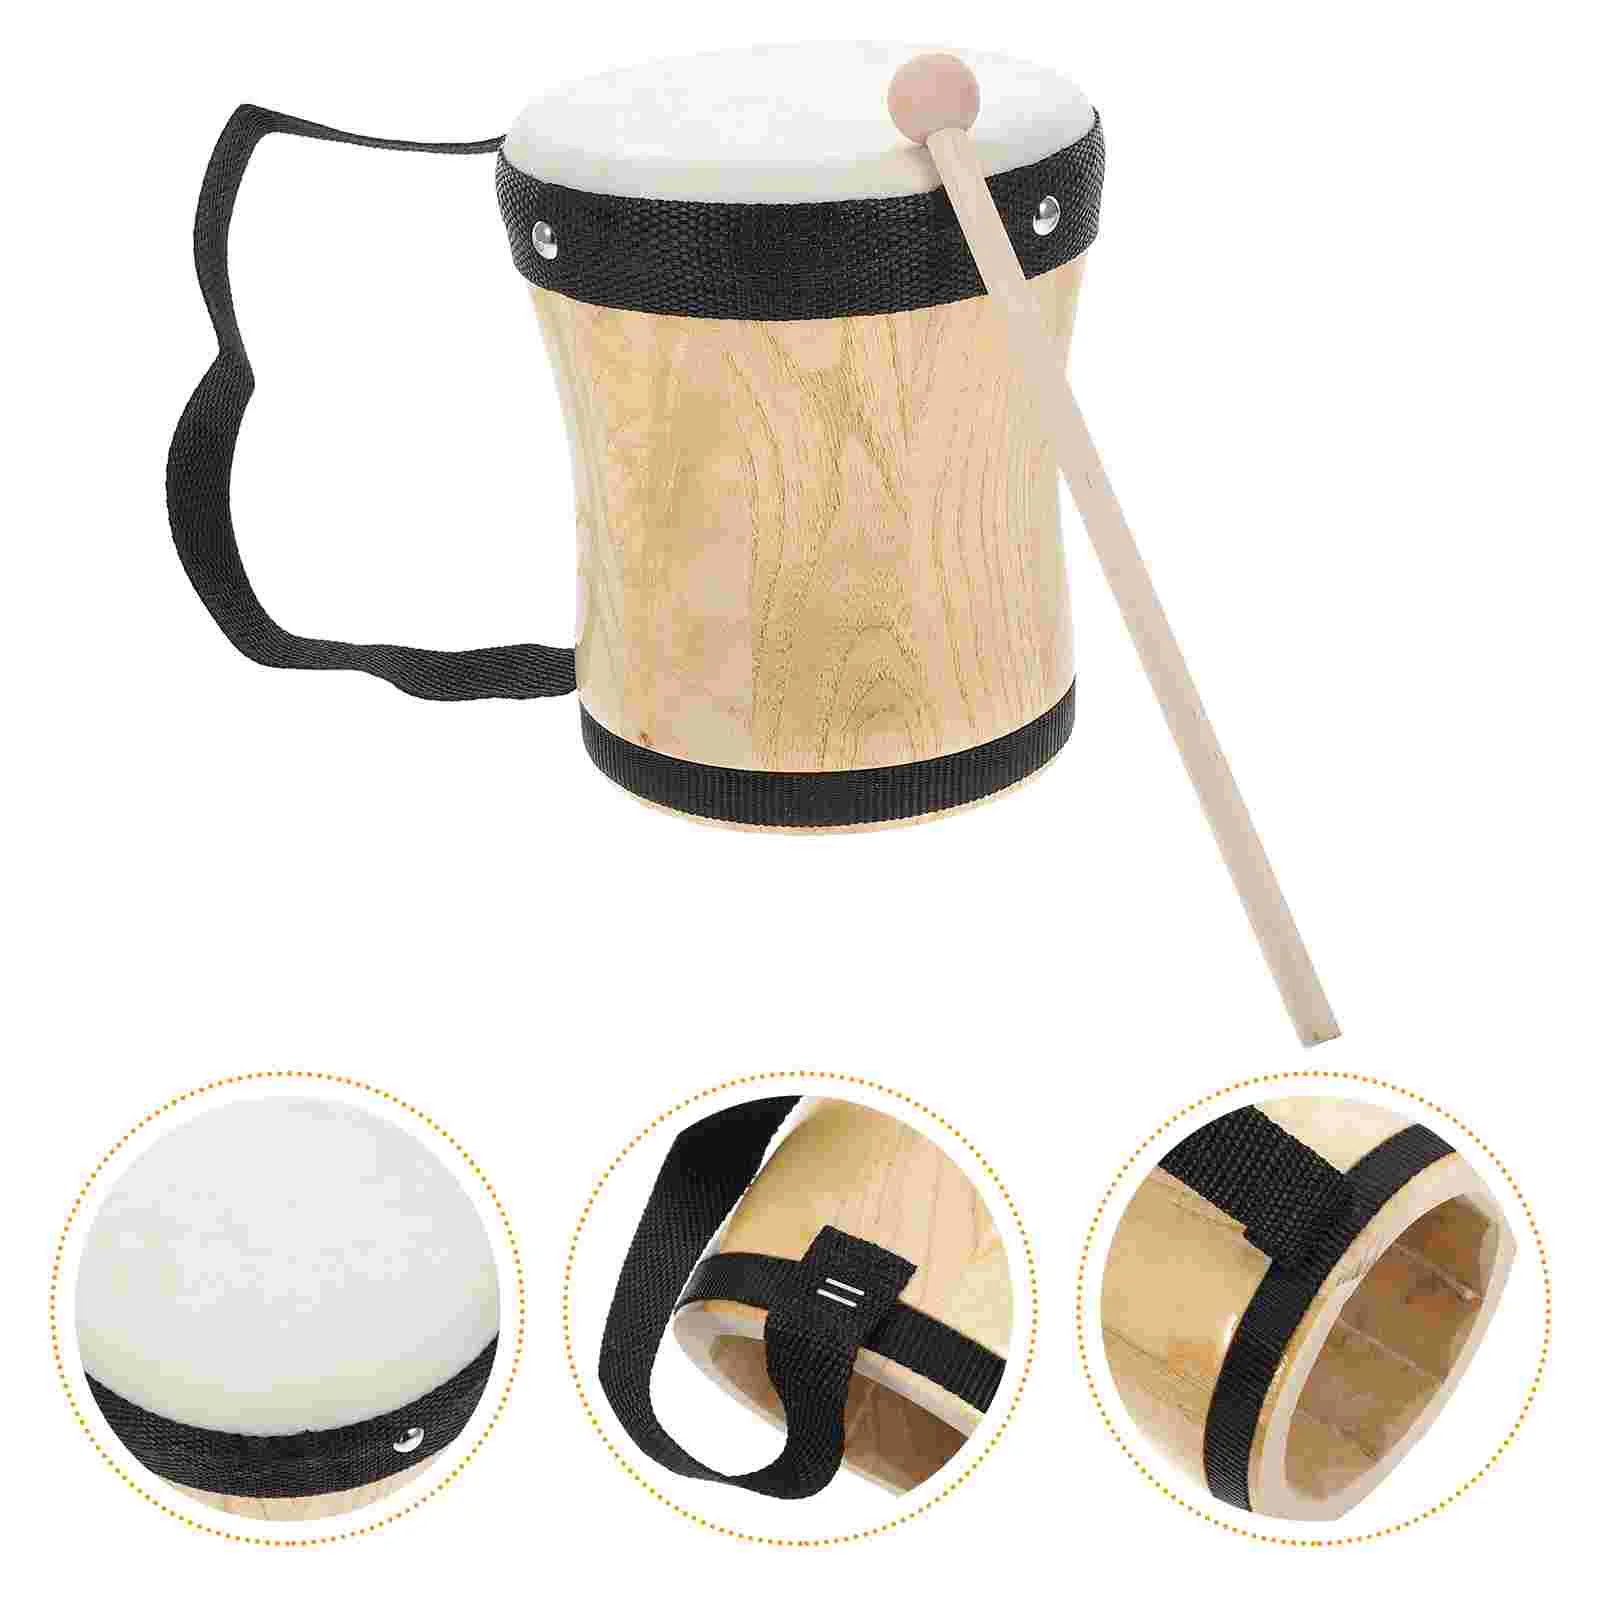 для обучения детей, ударный инструмент, Практичный Бонго-барабан из овчины, ударный инструмент, Музыкальный барабан, игрушка для детей